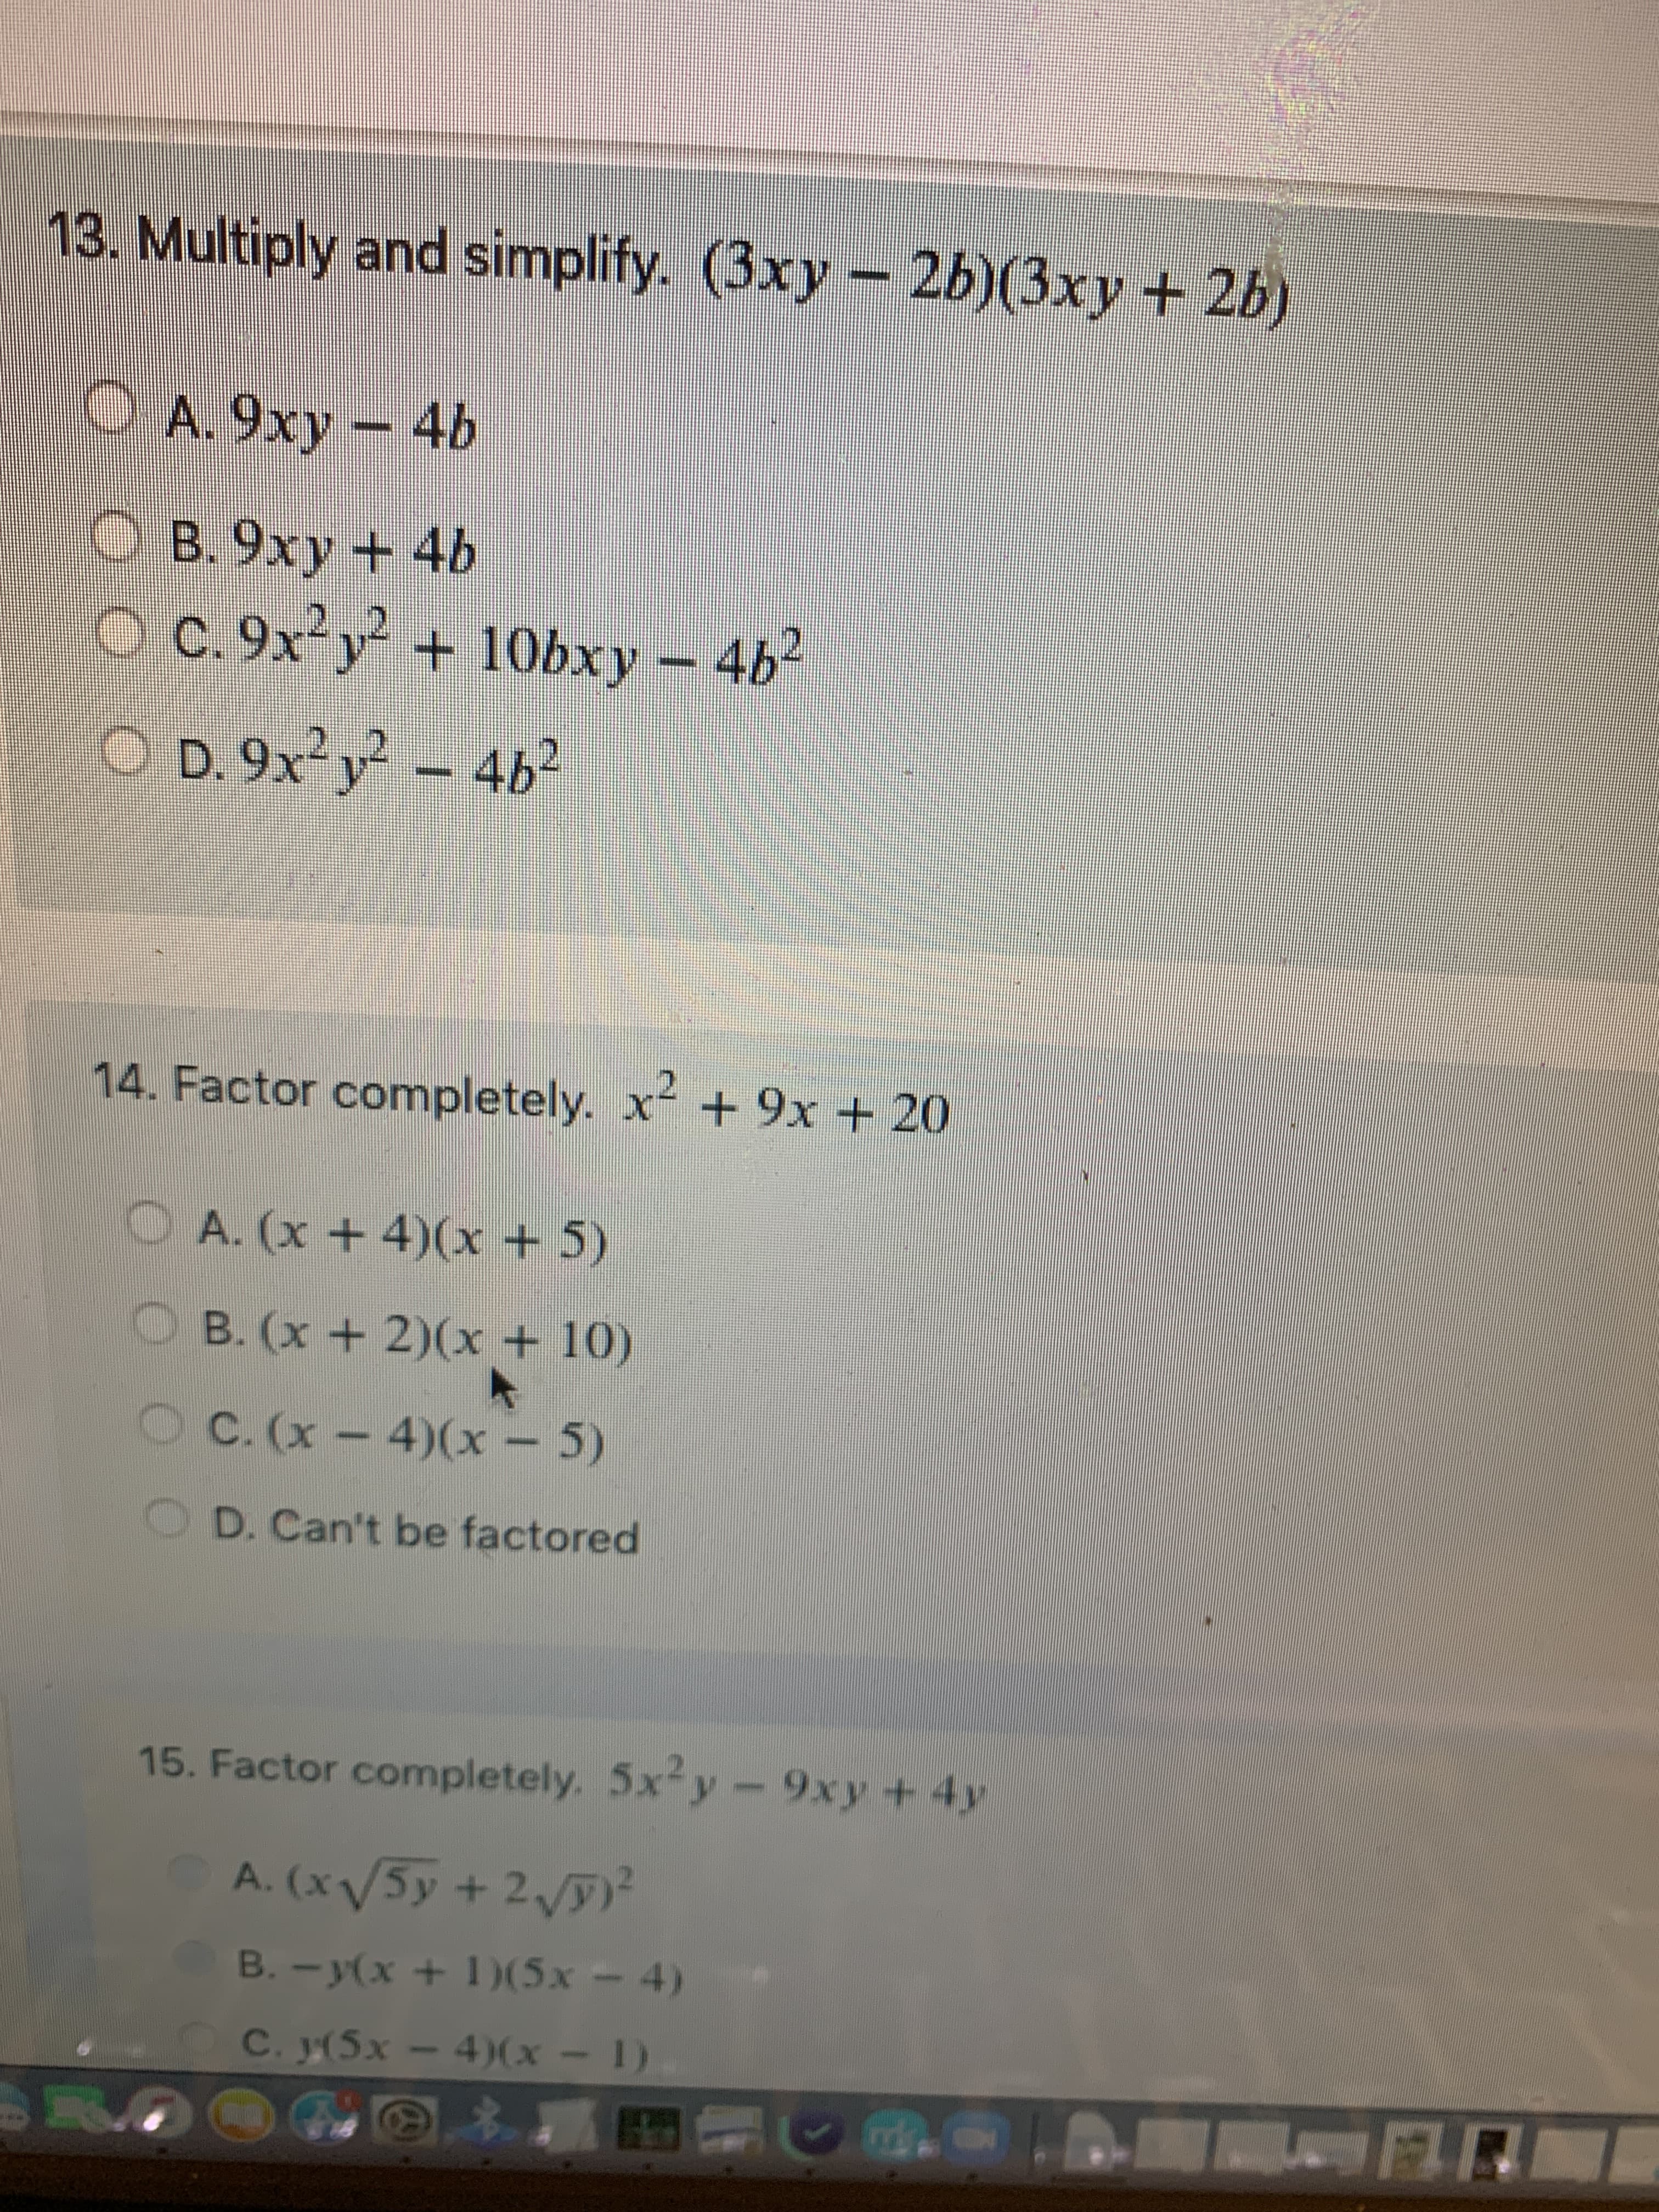 13. Multiply and simplify. (3xy - 26)(3xy+ 2b)
OA.9xy
- 4b
O B. 9xy + 4b
O C. 9x y + 10bxy 4b2
O D. 9x²y – 4b²
14. Factor completely. x + 9x + 20
OA. (x +4)(x+5)
OB. (x +2)(x + 10)
OC. (x-4)(x - 5)
O D. Can't be factored
15. Factor completely. 5x-y-9xy +4y
A. (x/5y + 2)²
B. -y(x + 1)(5x – 4)
(1 - x)( - xS)í 'Ɔ
